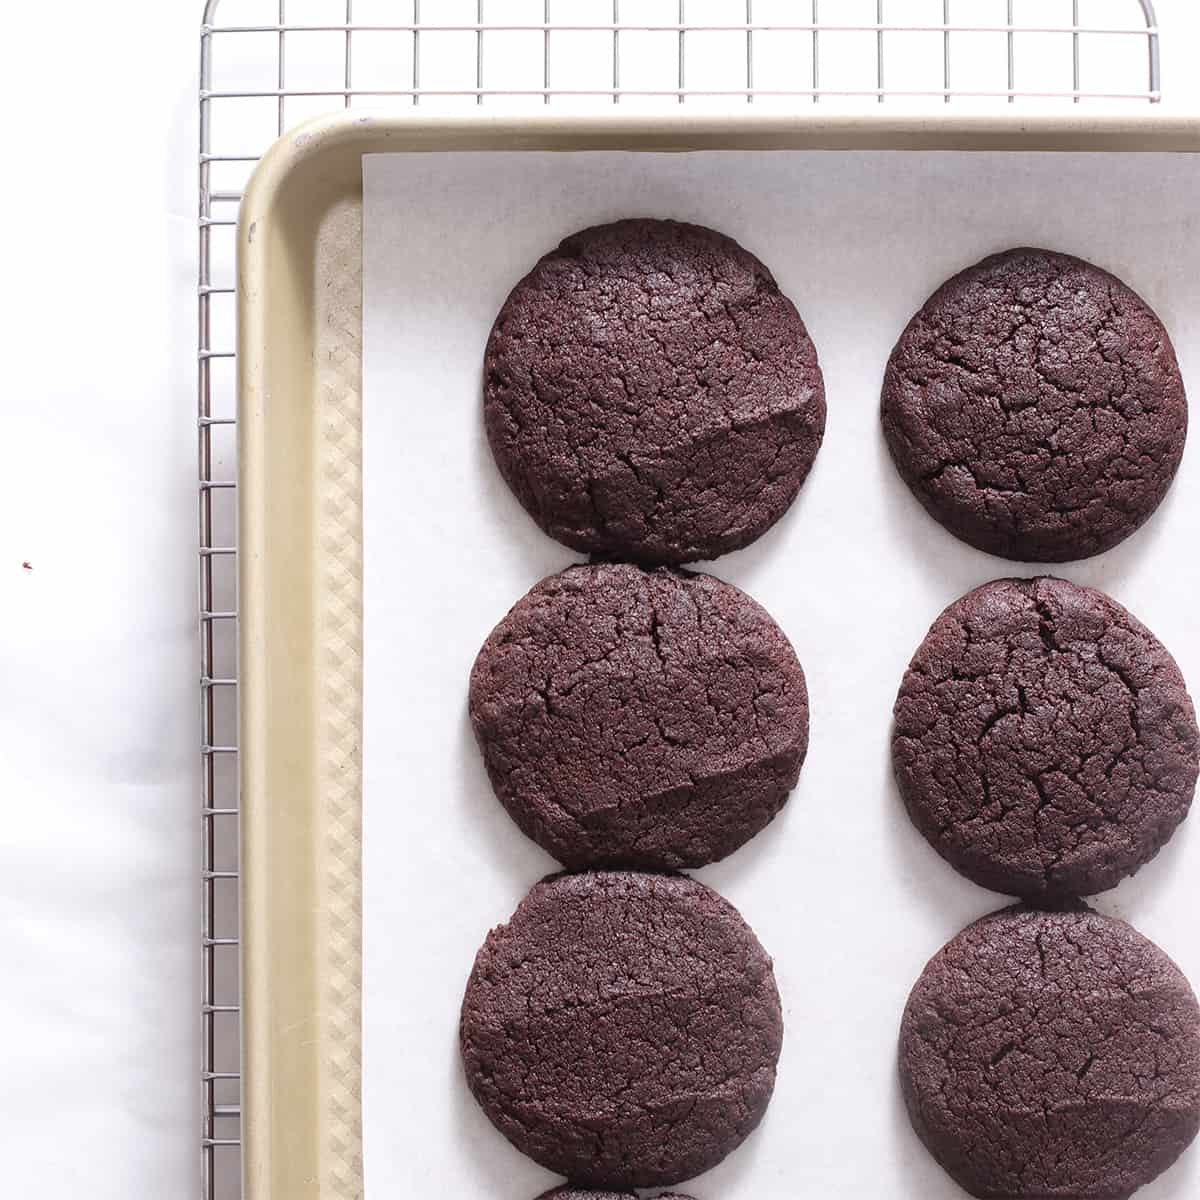 biscotti brownie cosmici al forno.